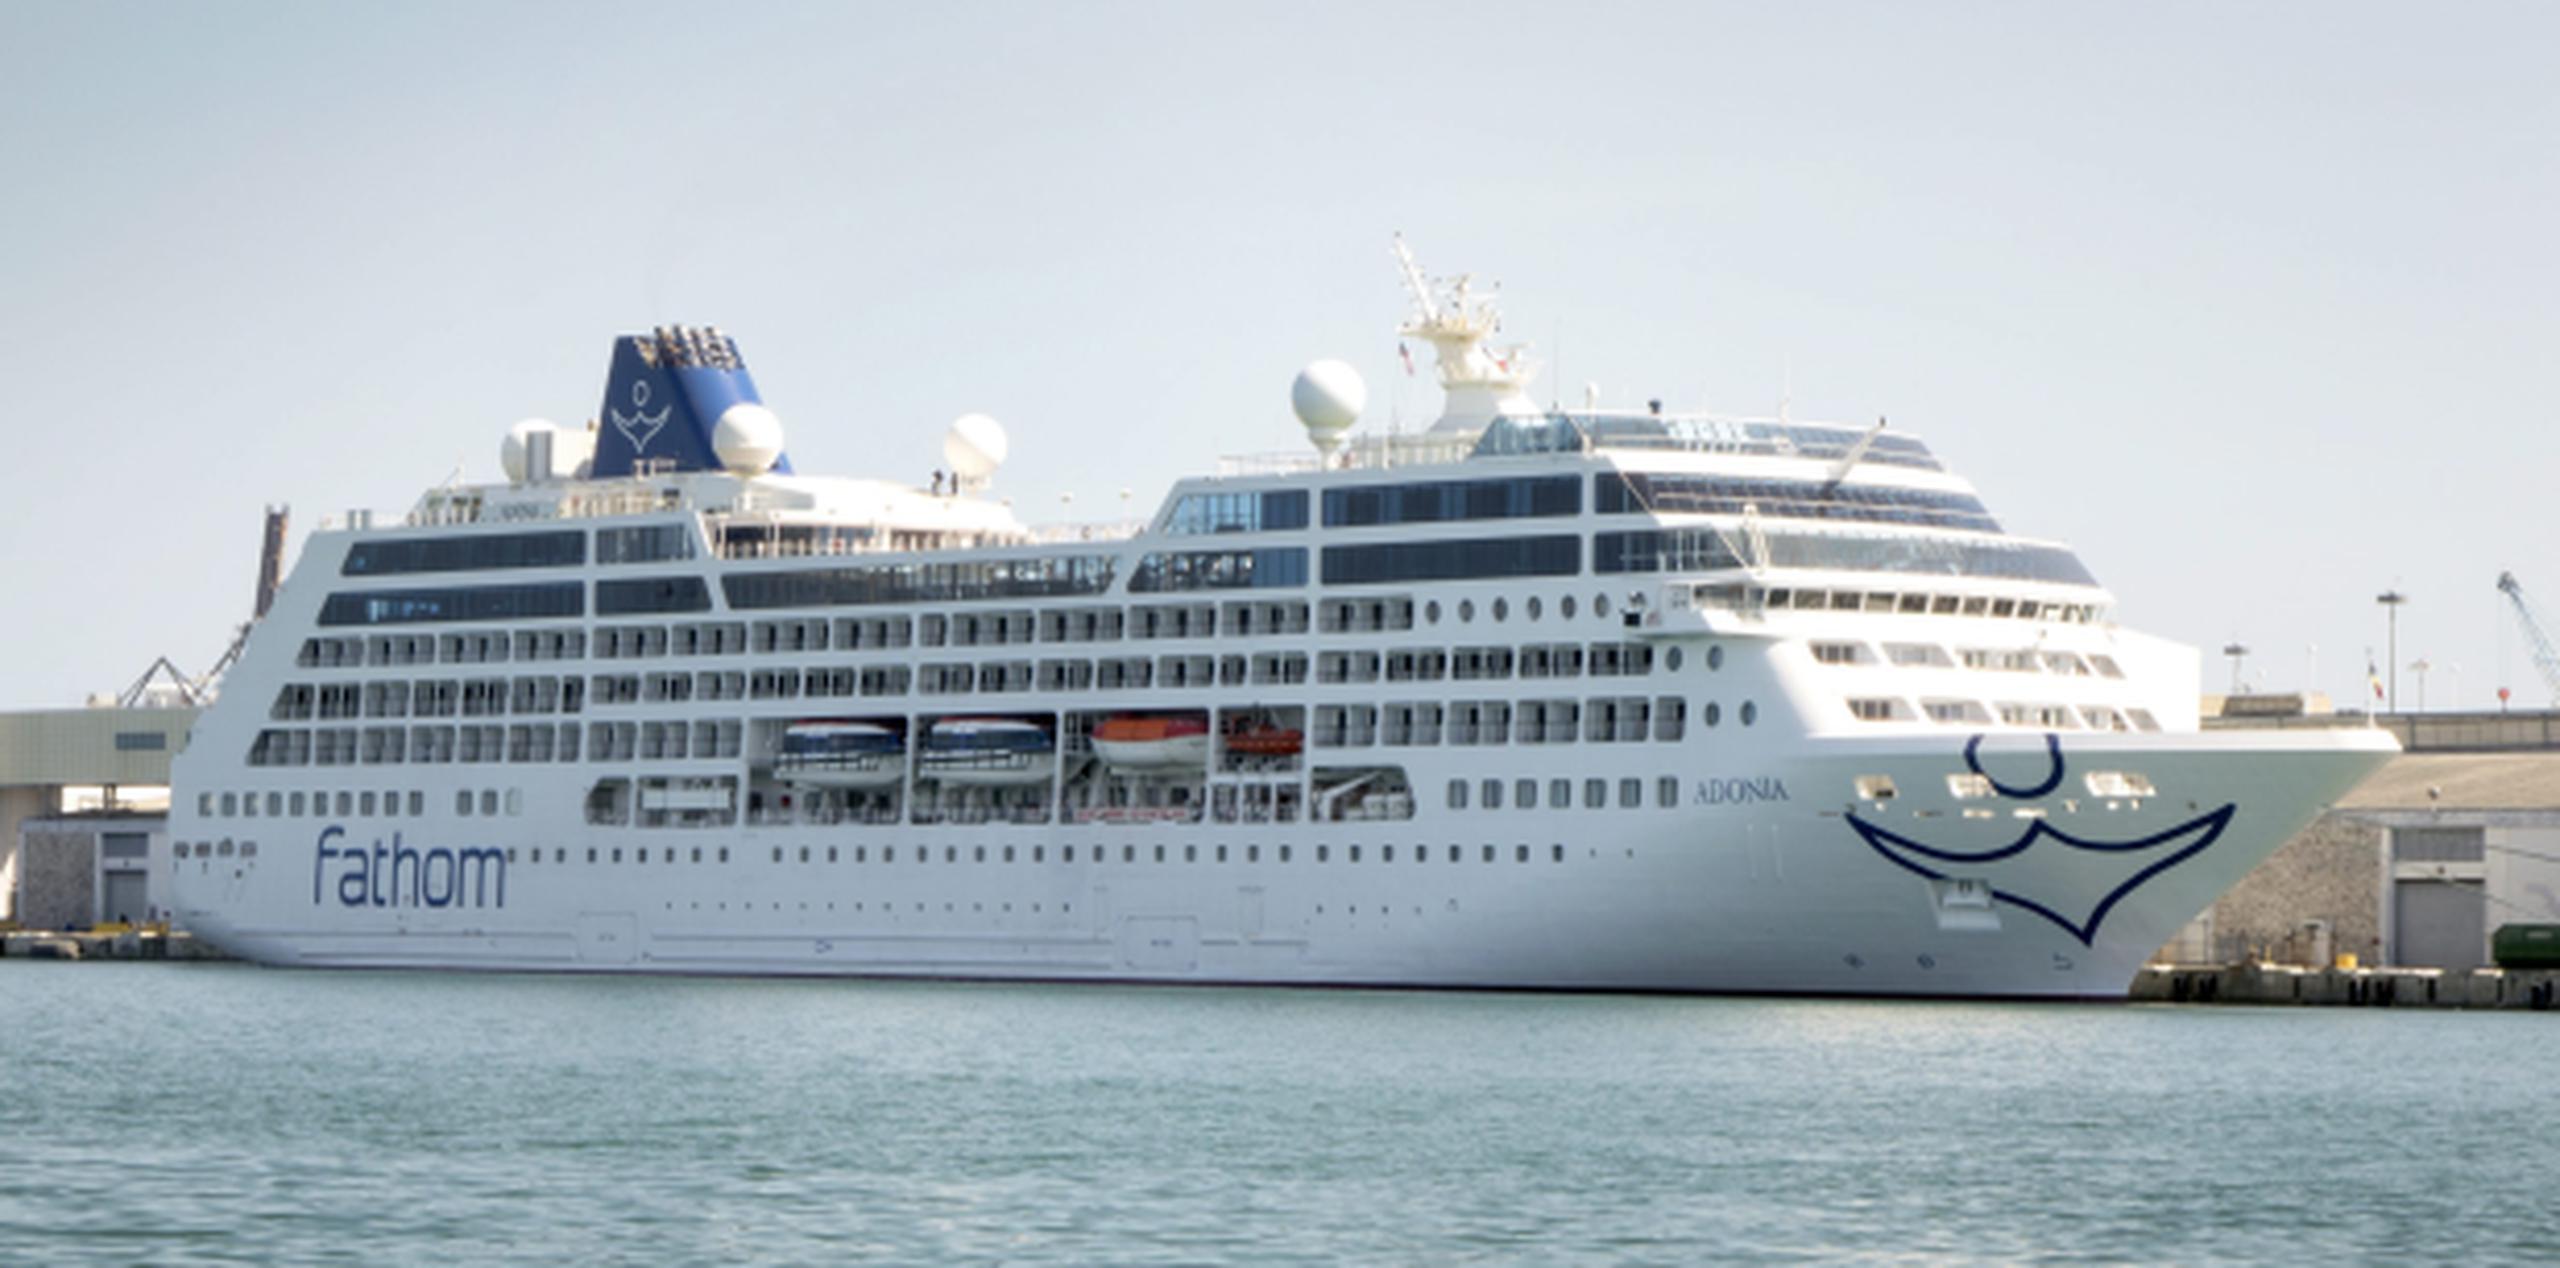 El crucero Adonia de la nueva línea de Carnival, Fathom, partirá hacia La Habana el próximo 1 de mayo como parte de la primera ruta Miami - La Habana de la compañía. (EFE/CRISTOBAL HERRERA)